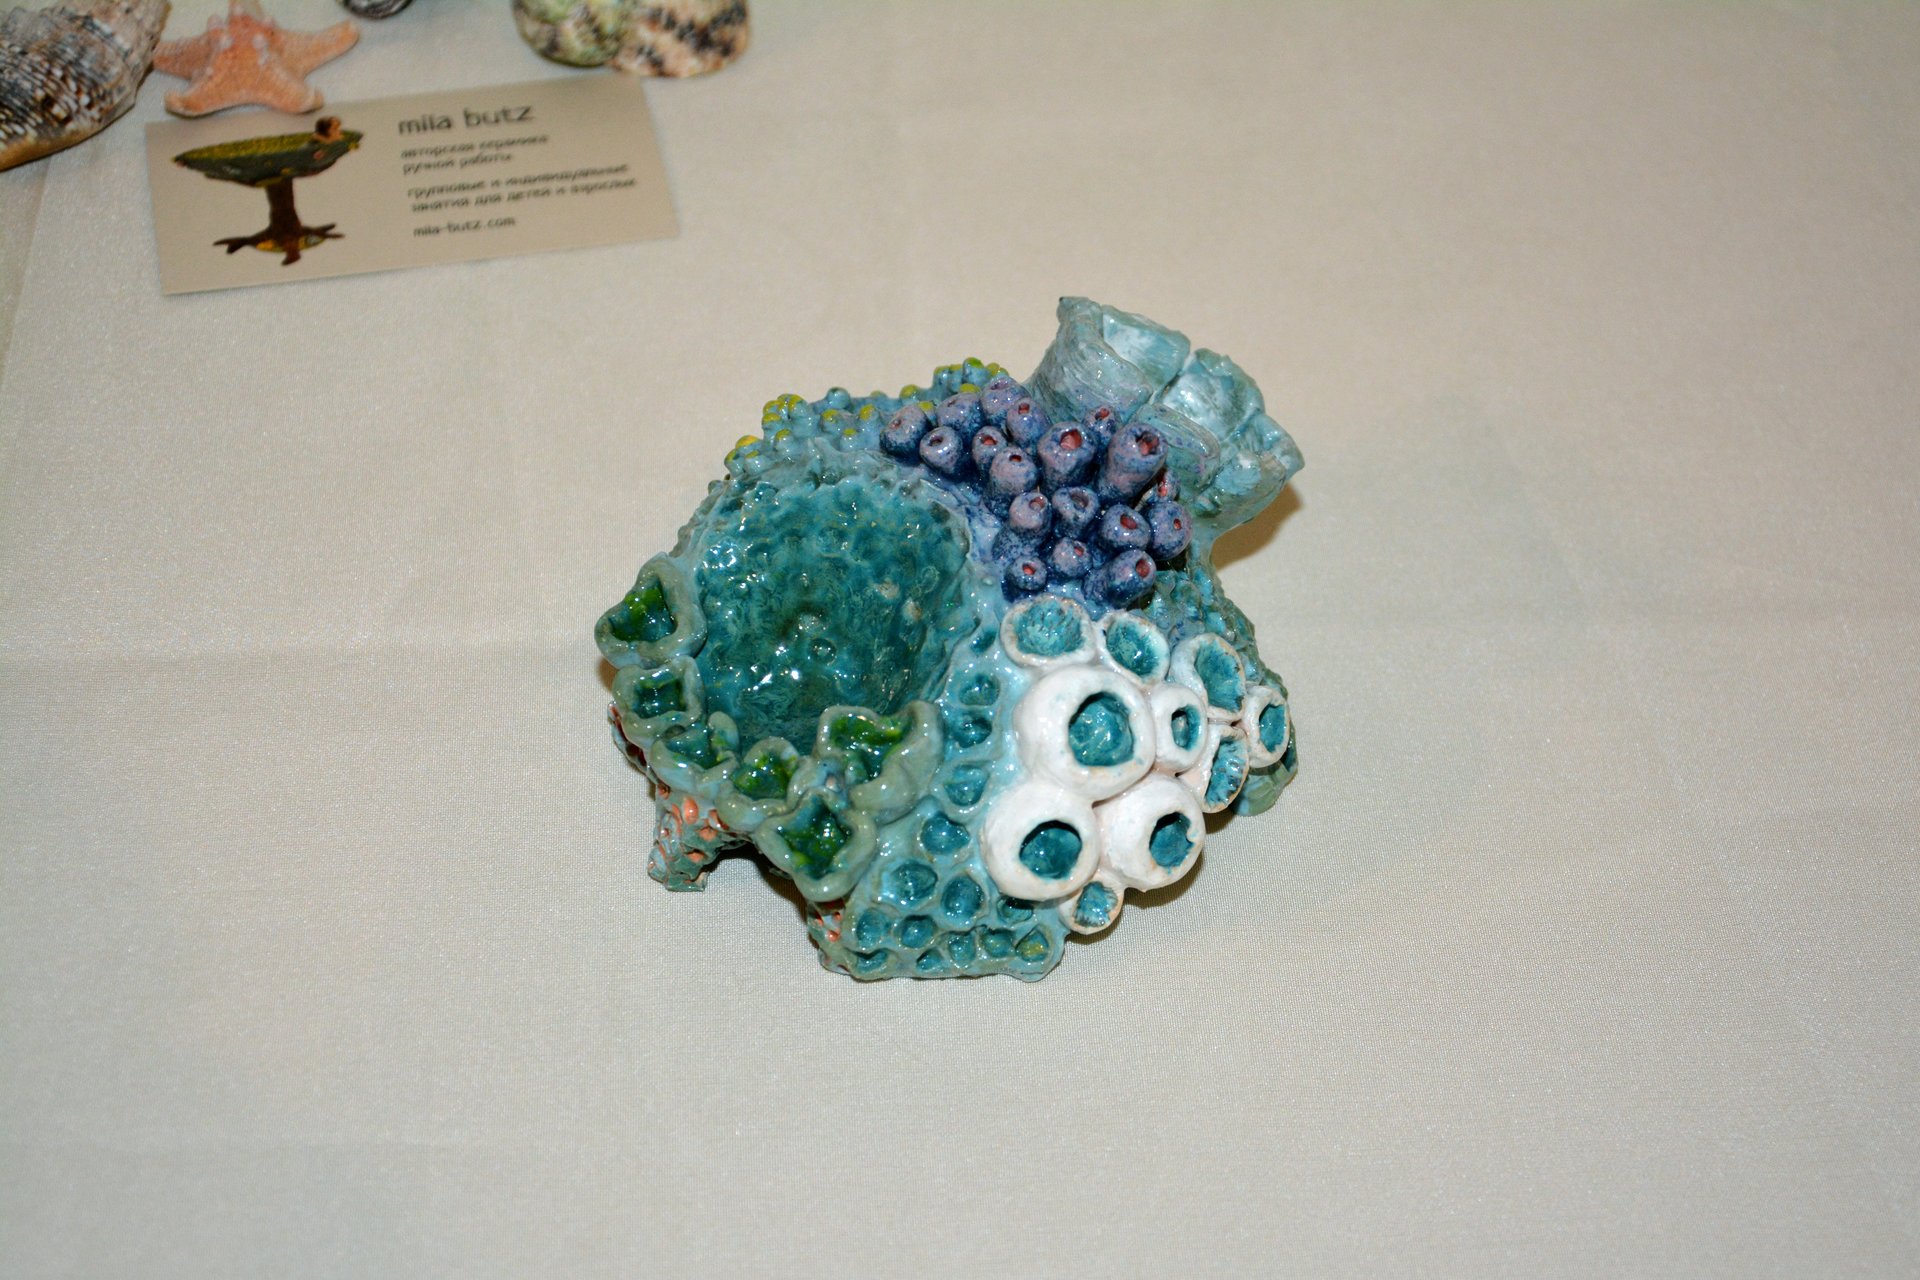 Coral IV - Ceramic for aquarium, width - 11 cm, height - 7 cm, photo 6 of 6.